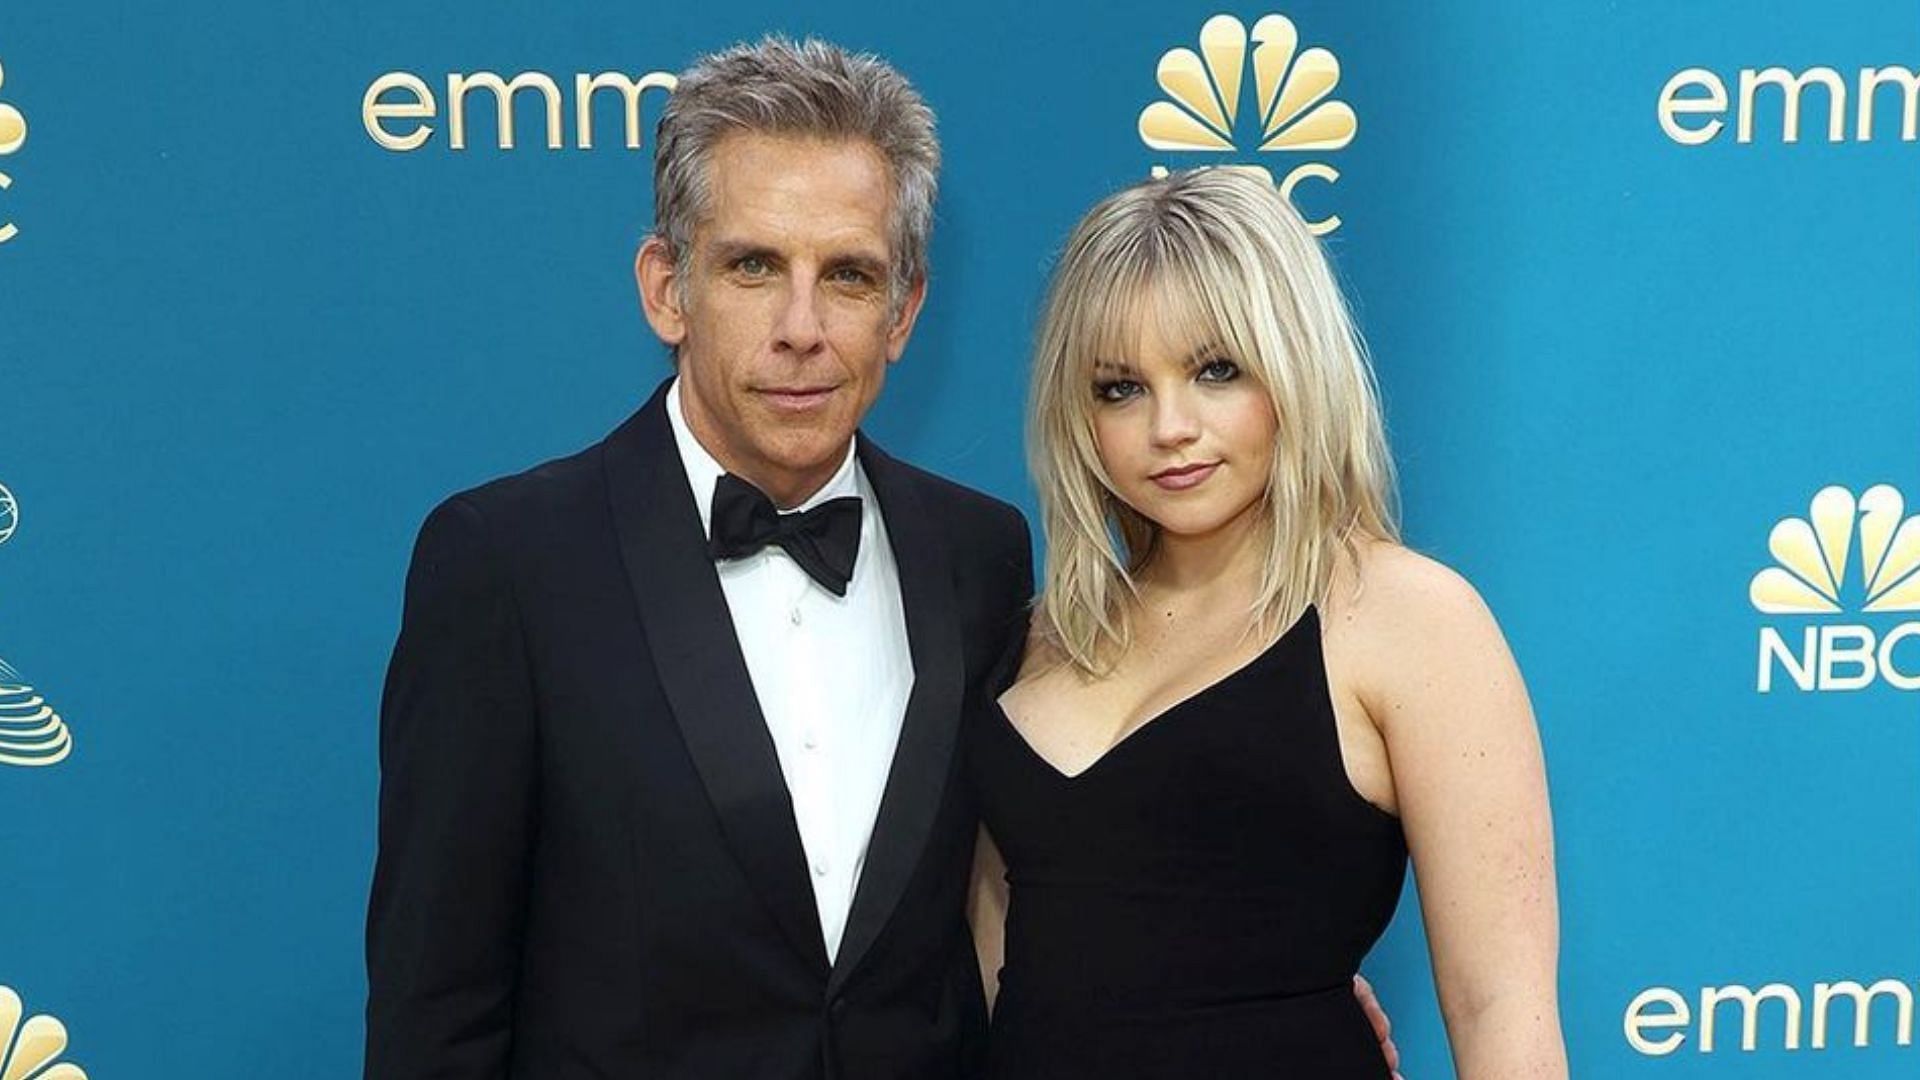 Ben Stiller brings daughter Ella Stiller to the 2022 Emmy Awards